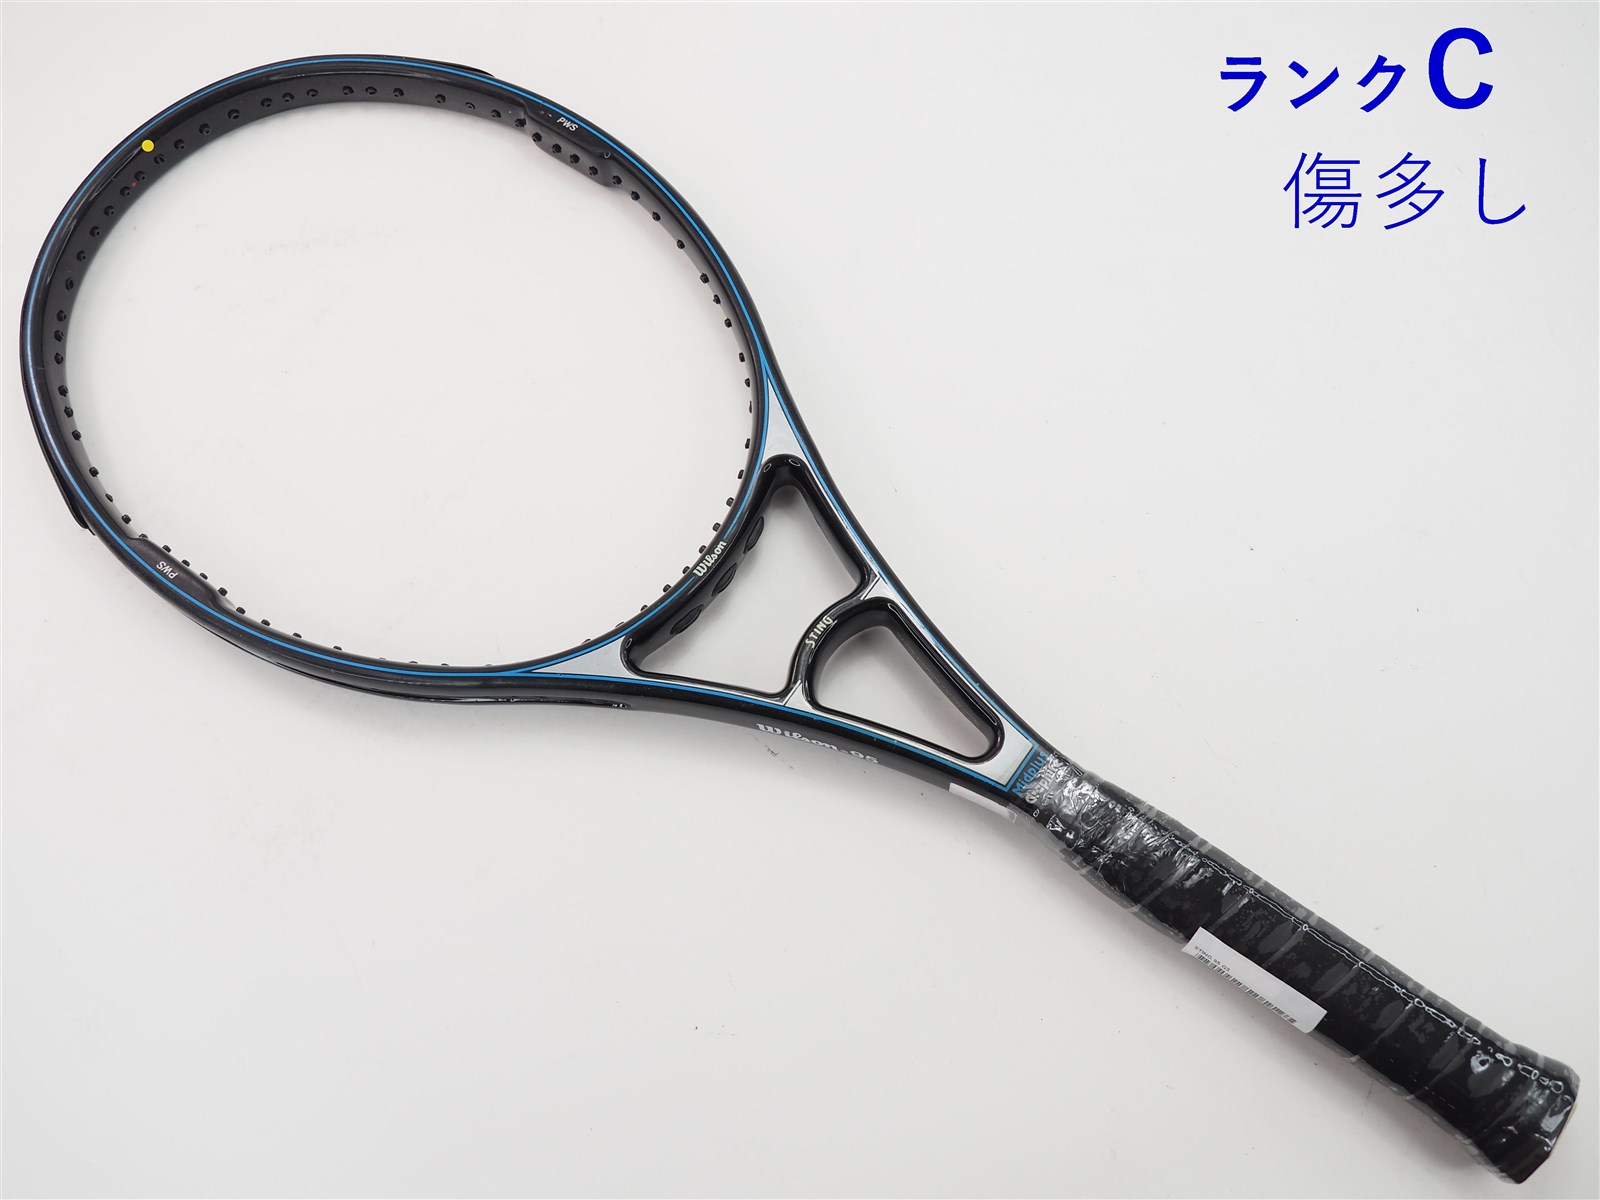 テニスラケット ウィルソン エヌ3 115 2005年モデル【一部グロメット割れ有り】 (G3)WILSON n3 115 200528-31-28mm重量